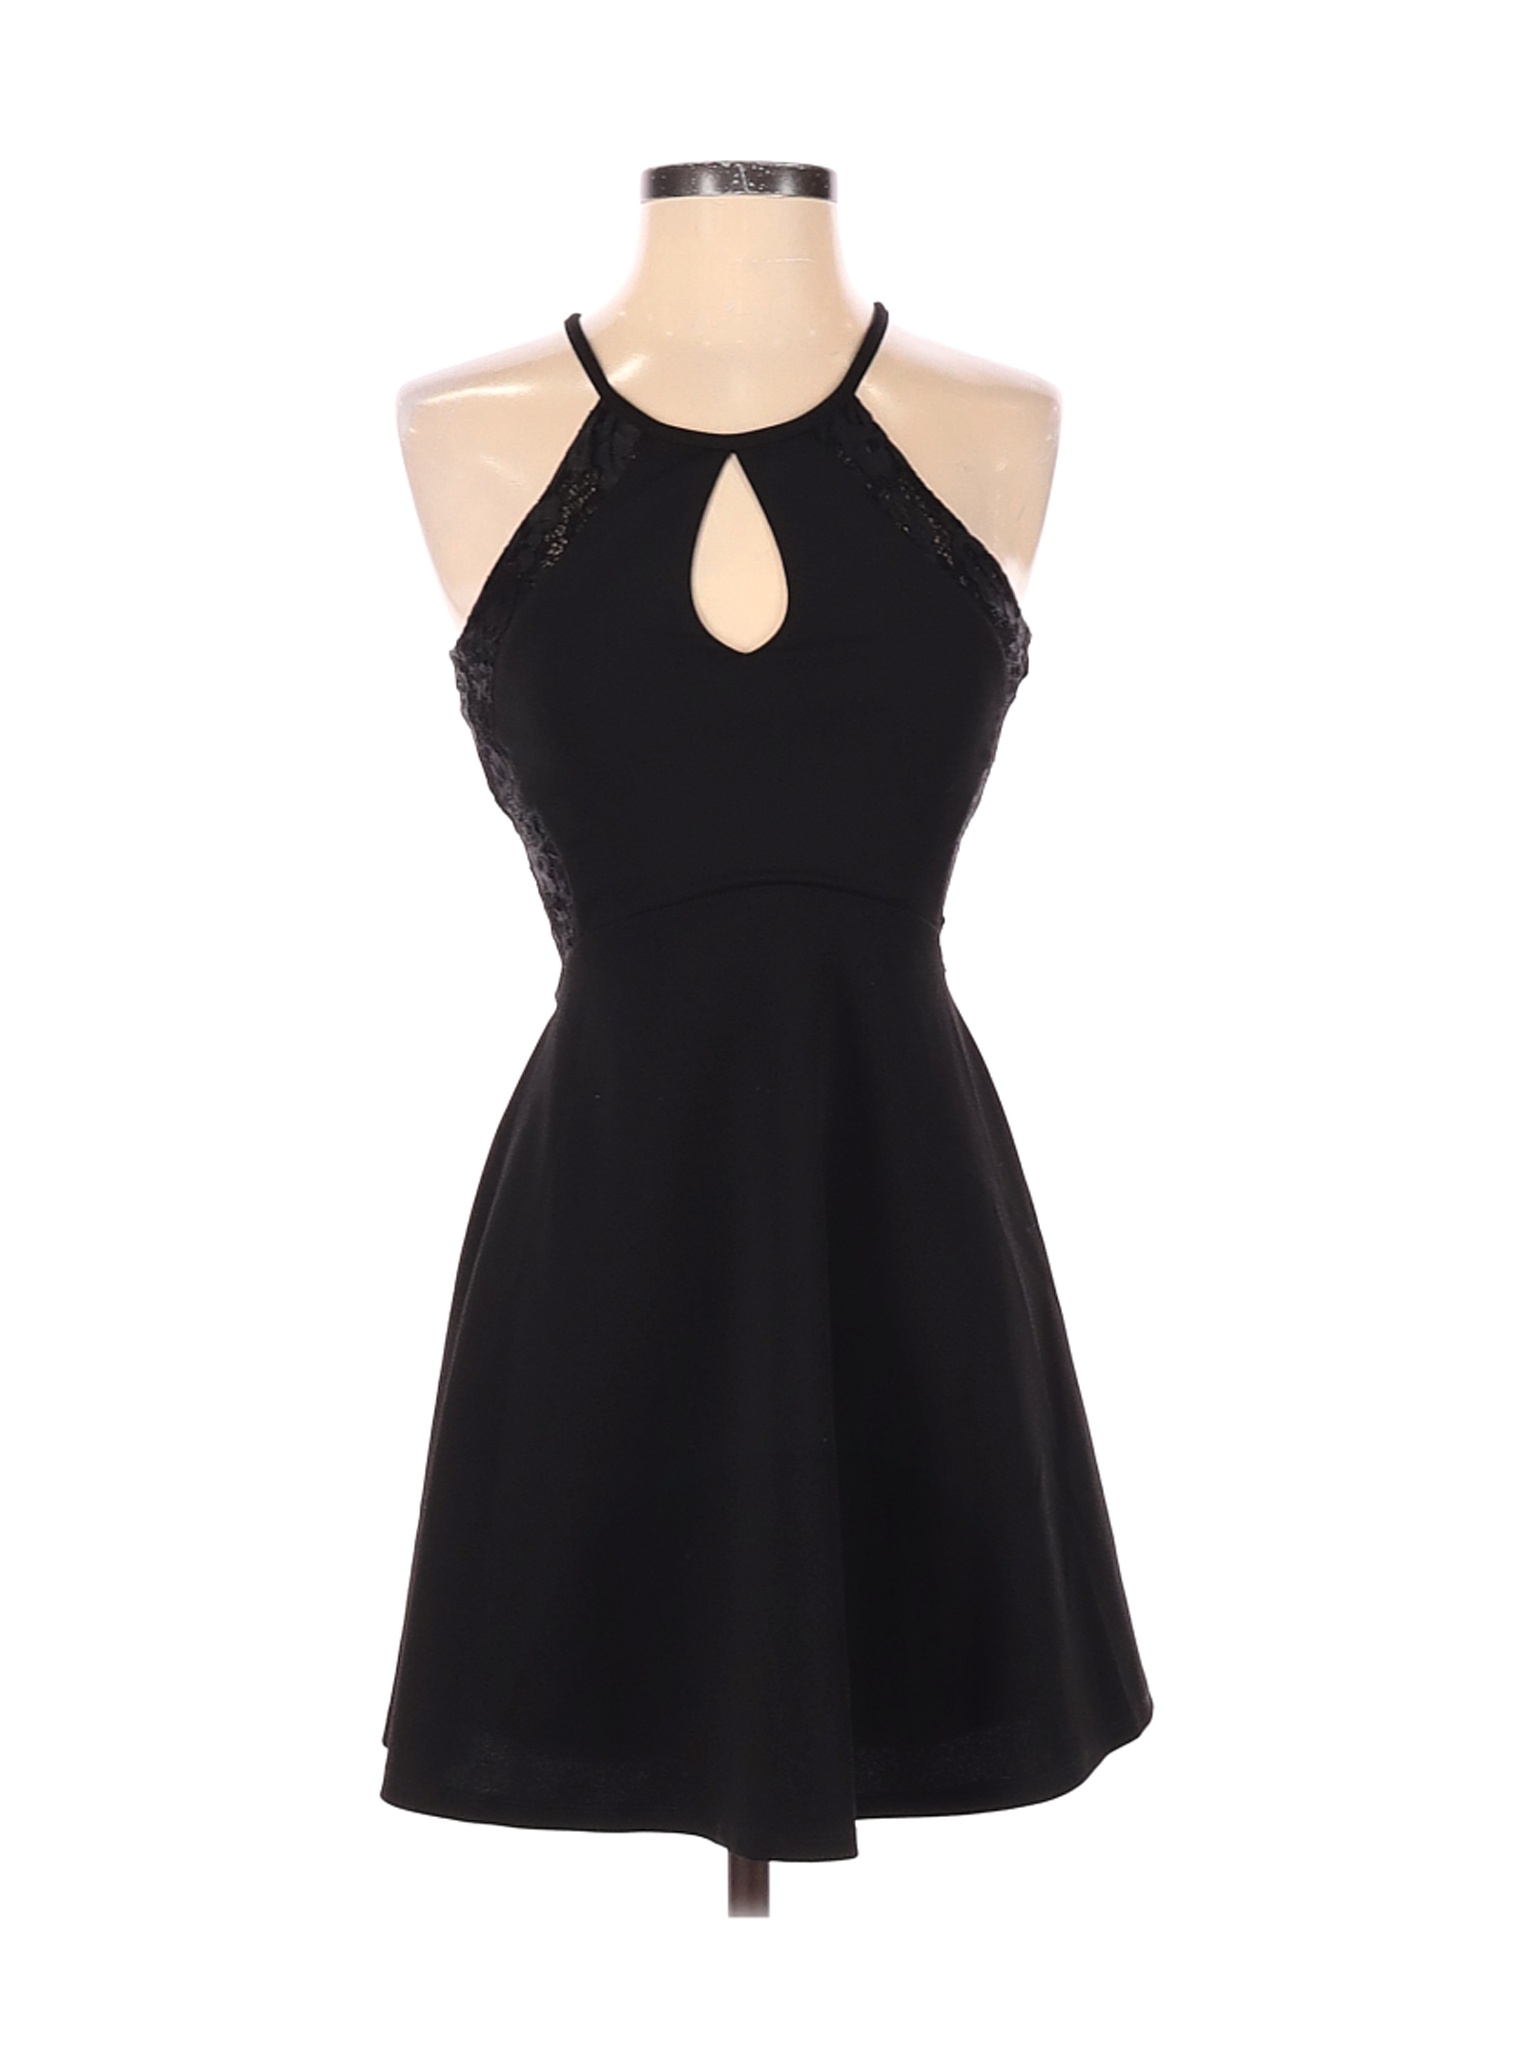 Speechless Women Black Cocktail Dress 1 | eBay